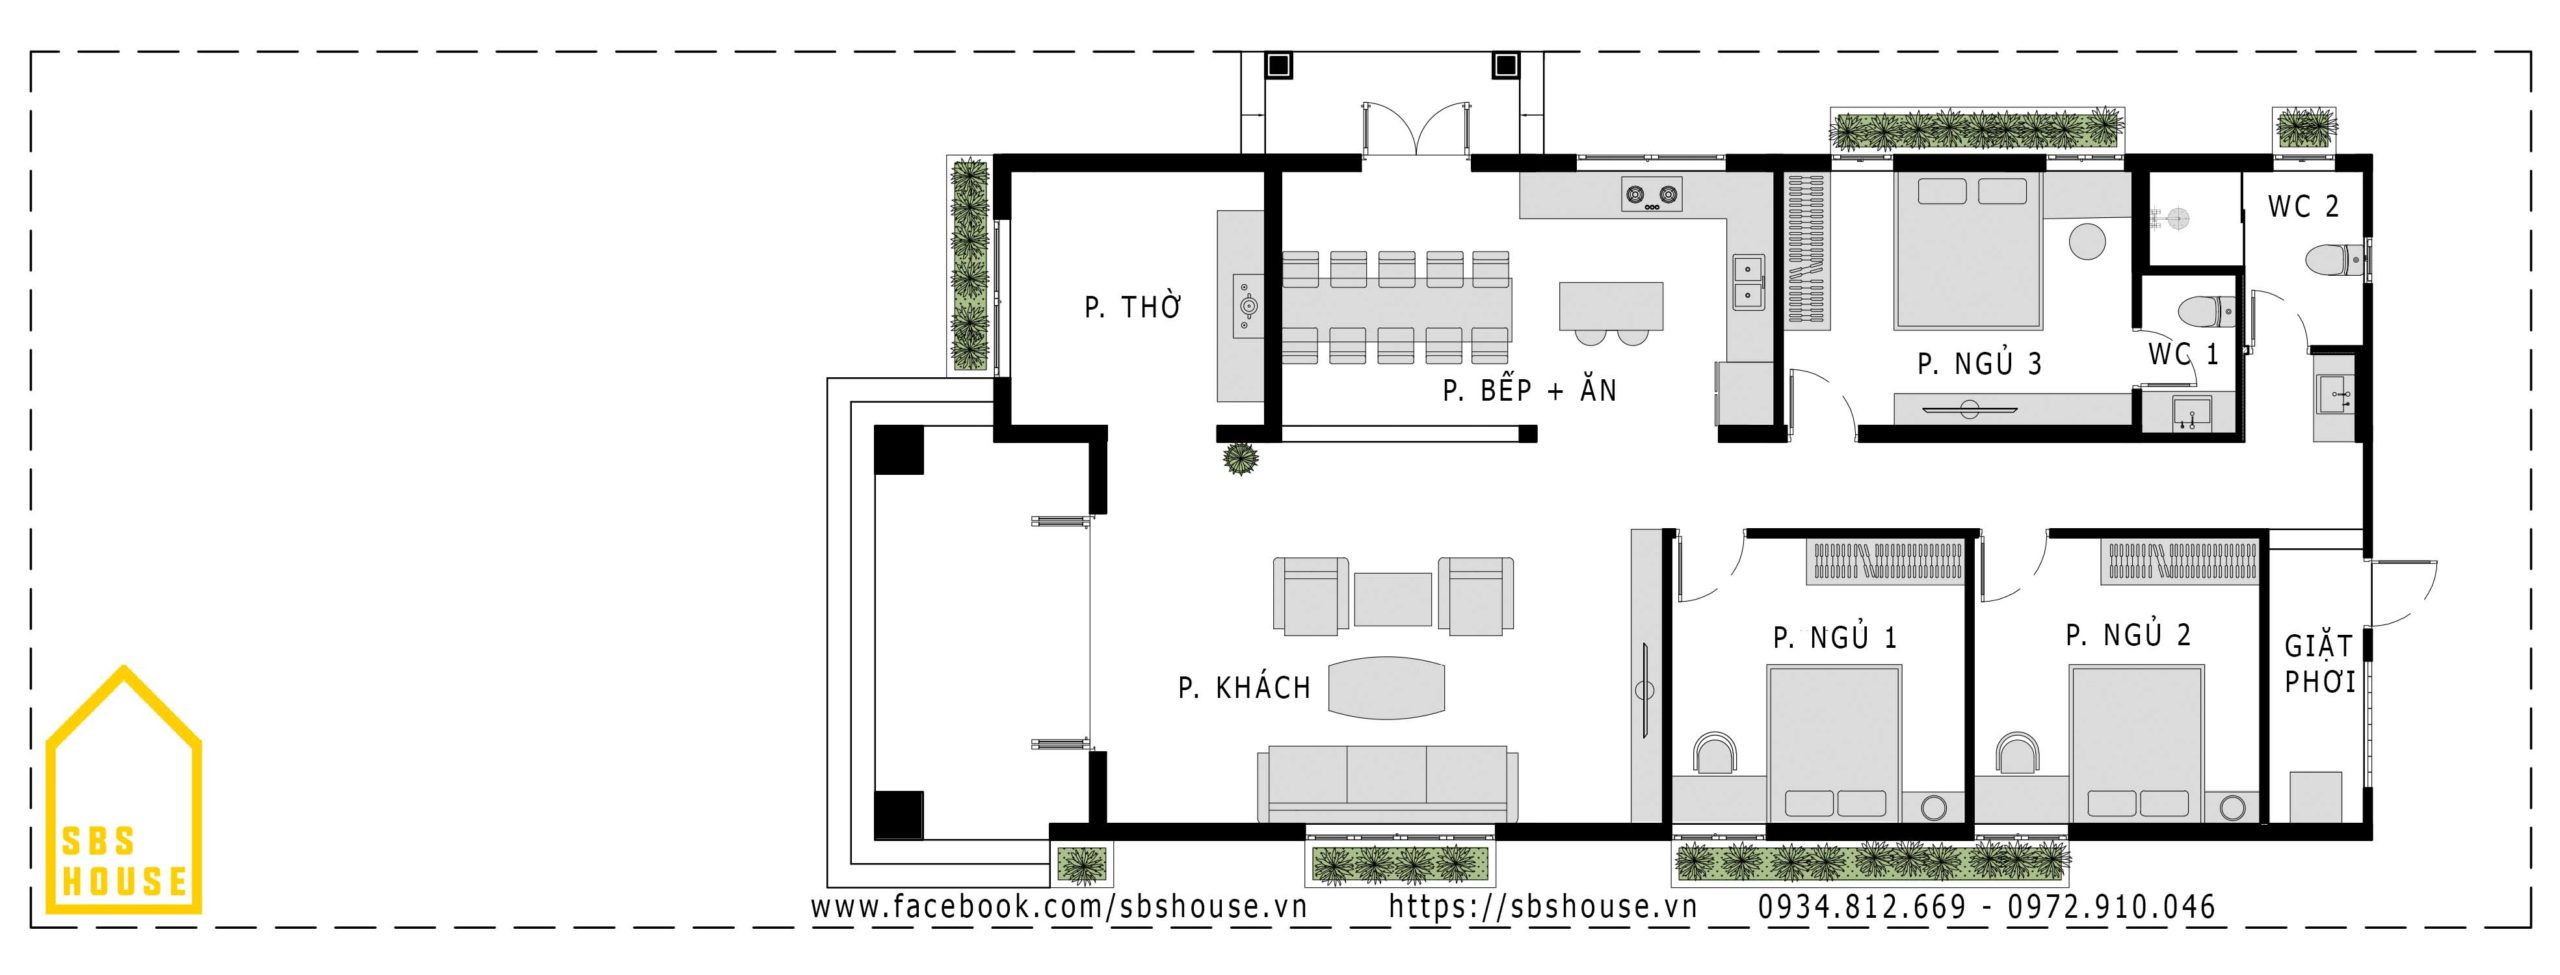 Thiết kế biệt thự vườn 1 tầng mái thái 150m2 4 phòng ngủ ông Thịnh Vĩnh Phúc